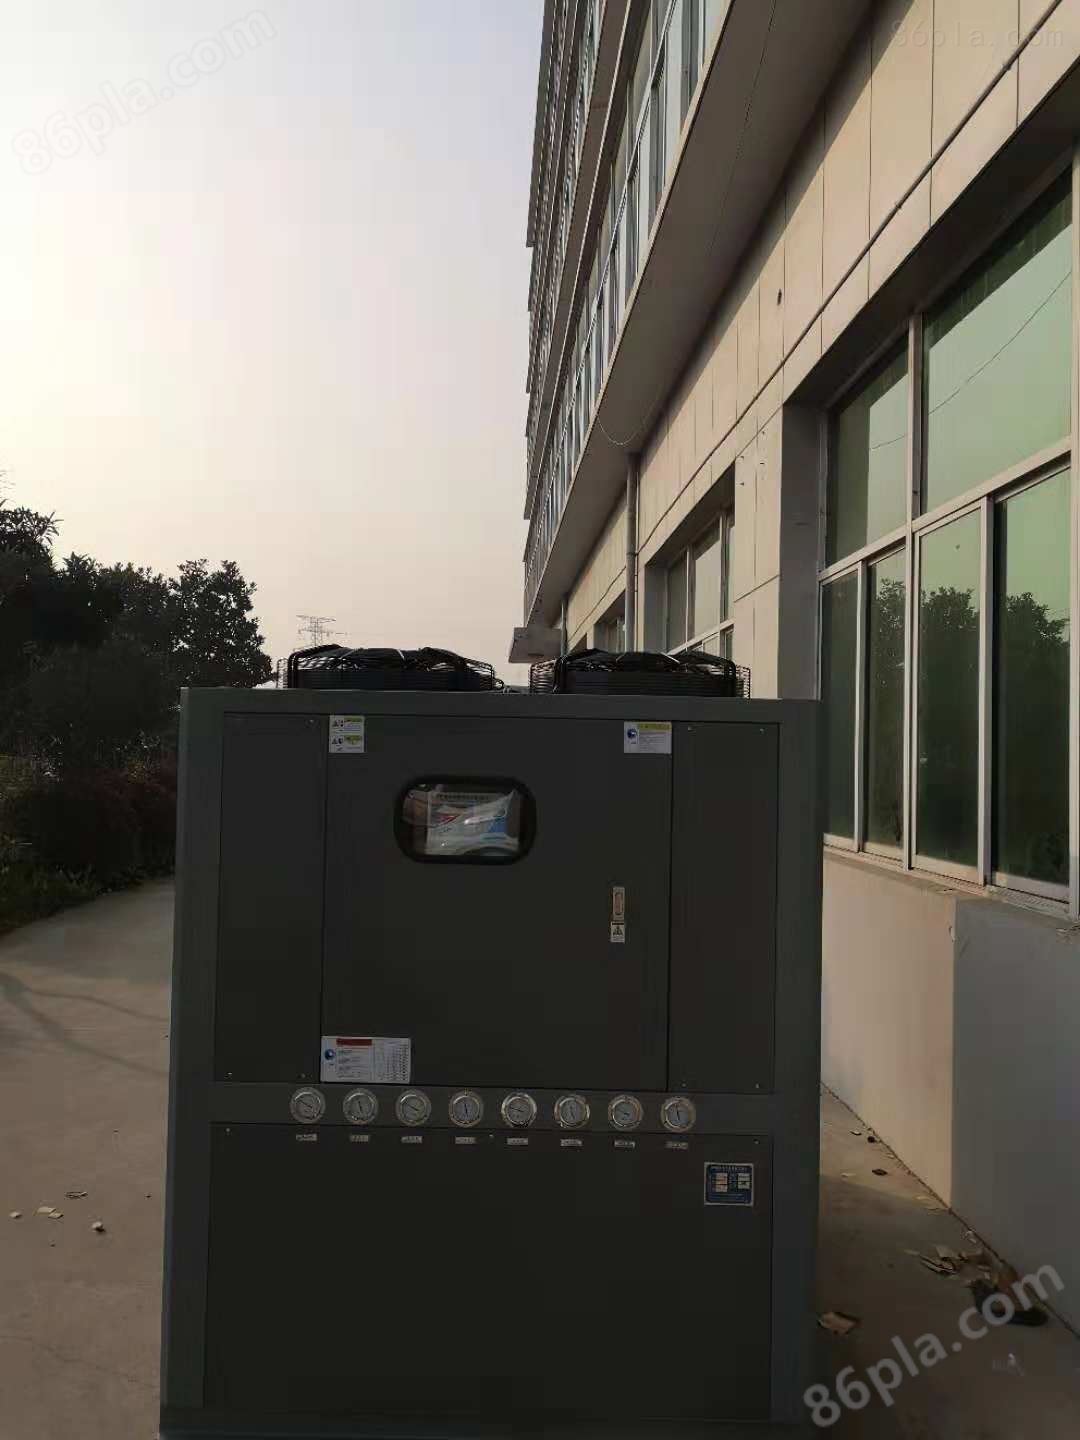 南京23HP风冷箱式冷水机厂家批发